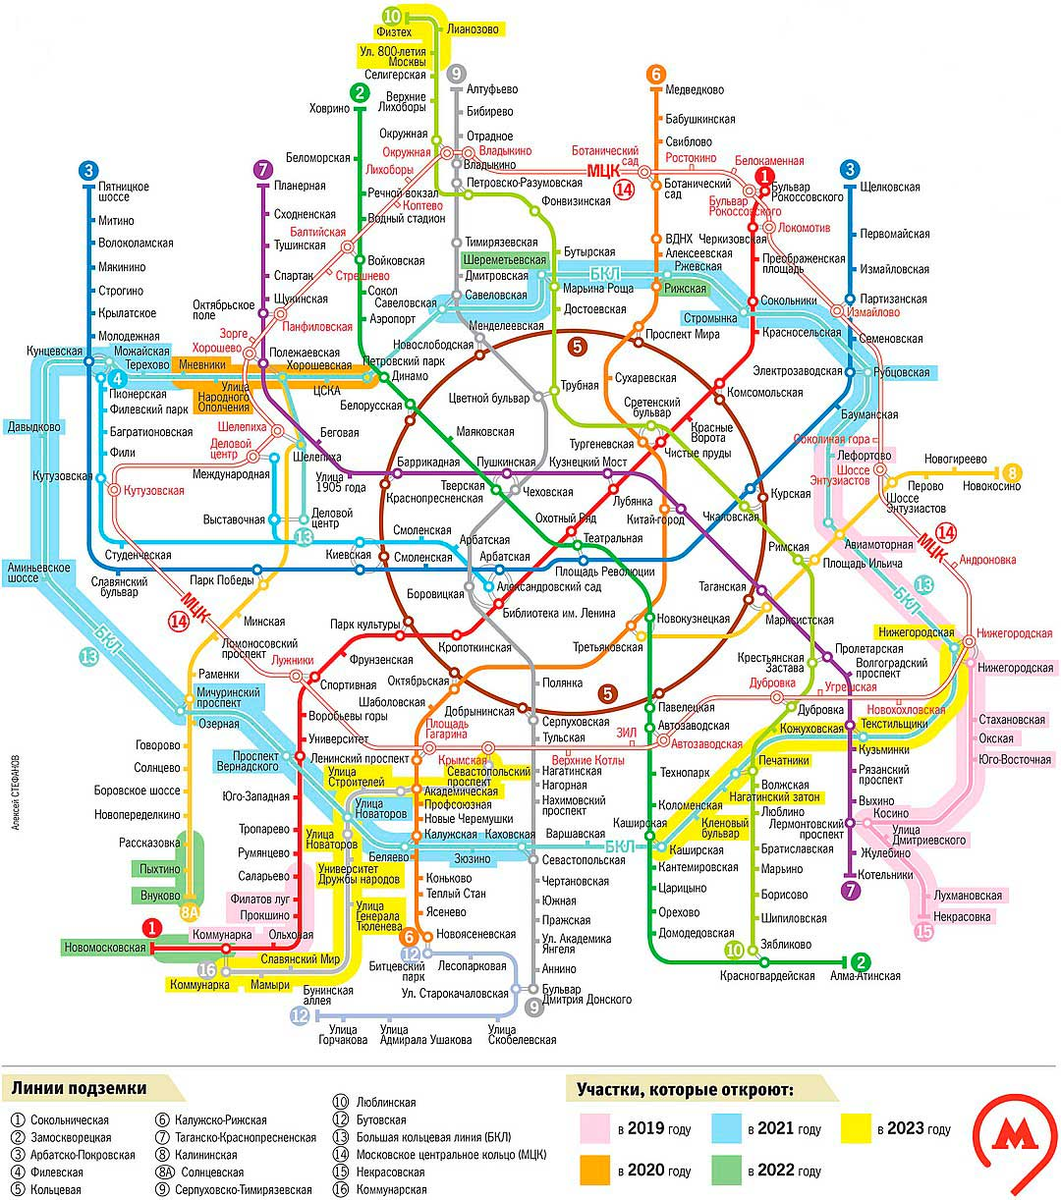 Как доехать от мцк до метро. Схема Московского метрополитена 2021 новая. Схема метрополитена на карте Москвы 2021. Метро Москва схема 2021. Метро Москвы схема 2021 с новыми станциями 2021.